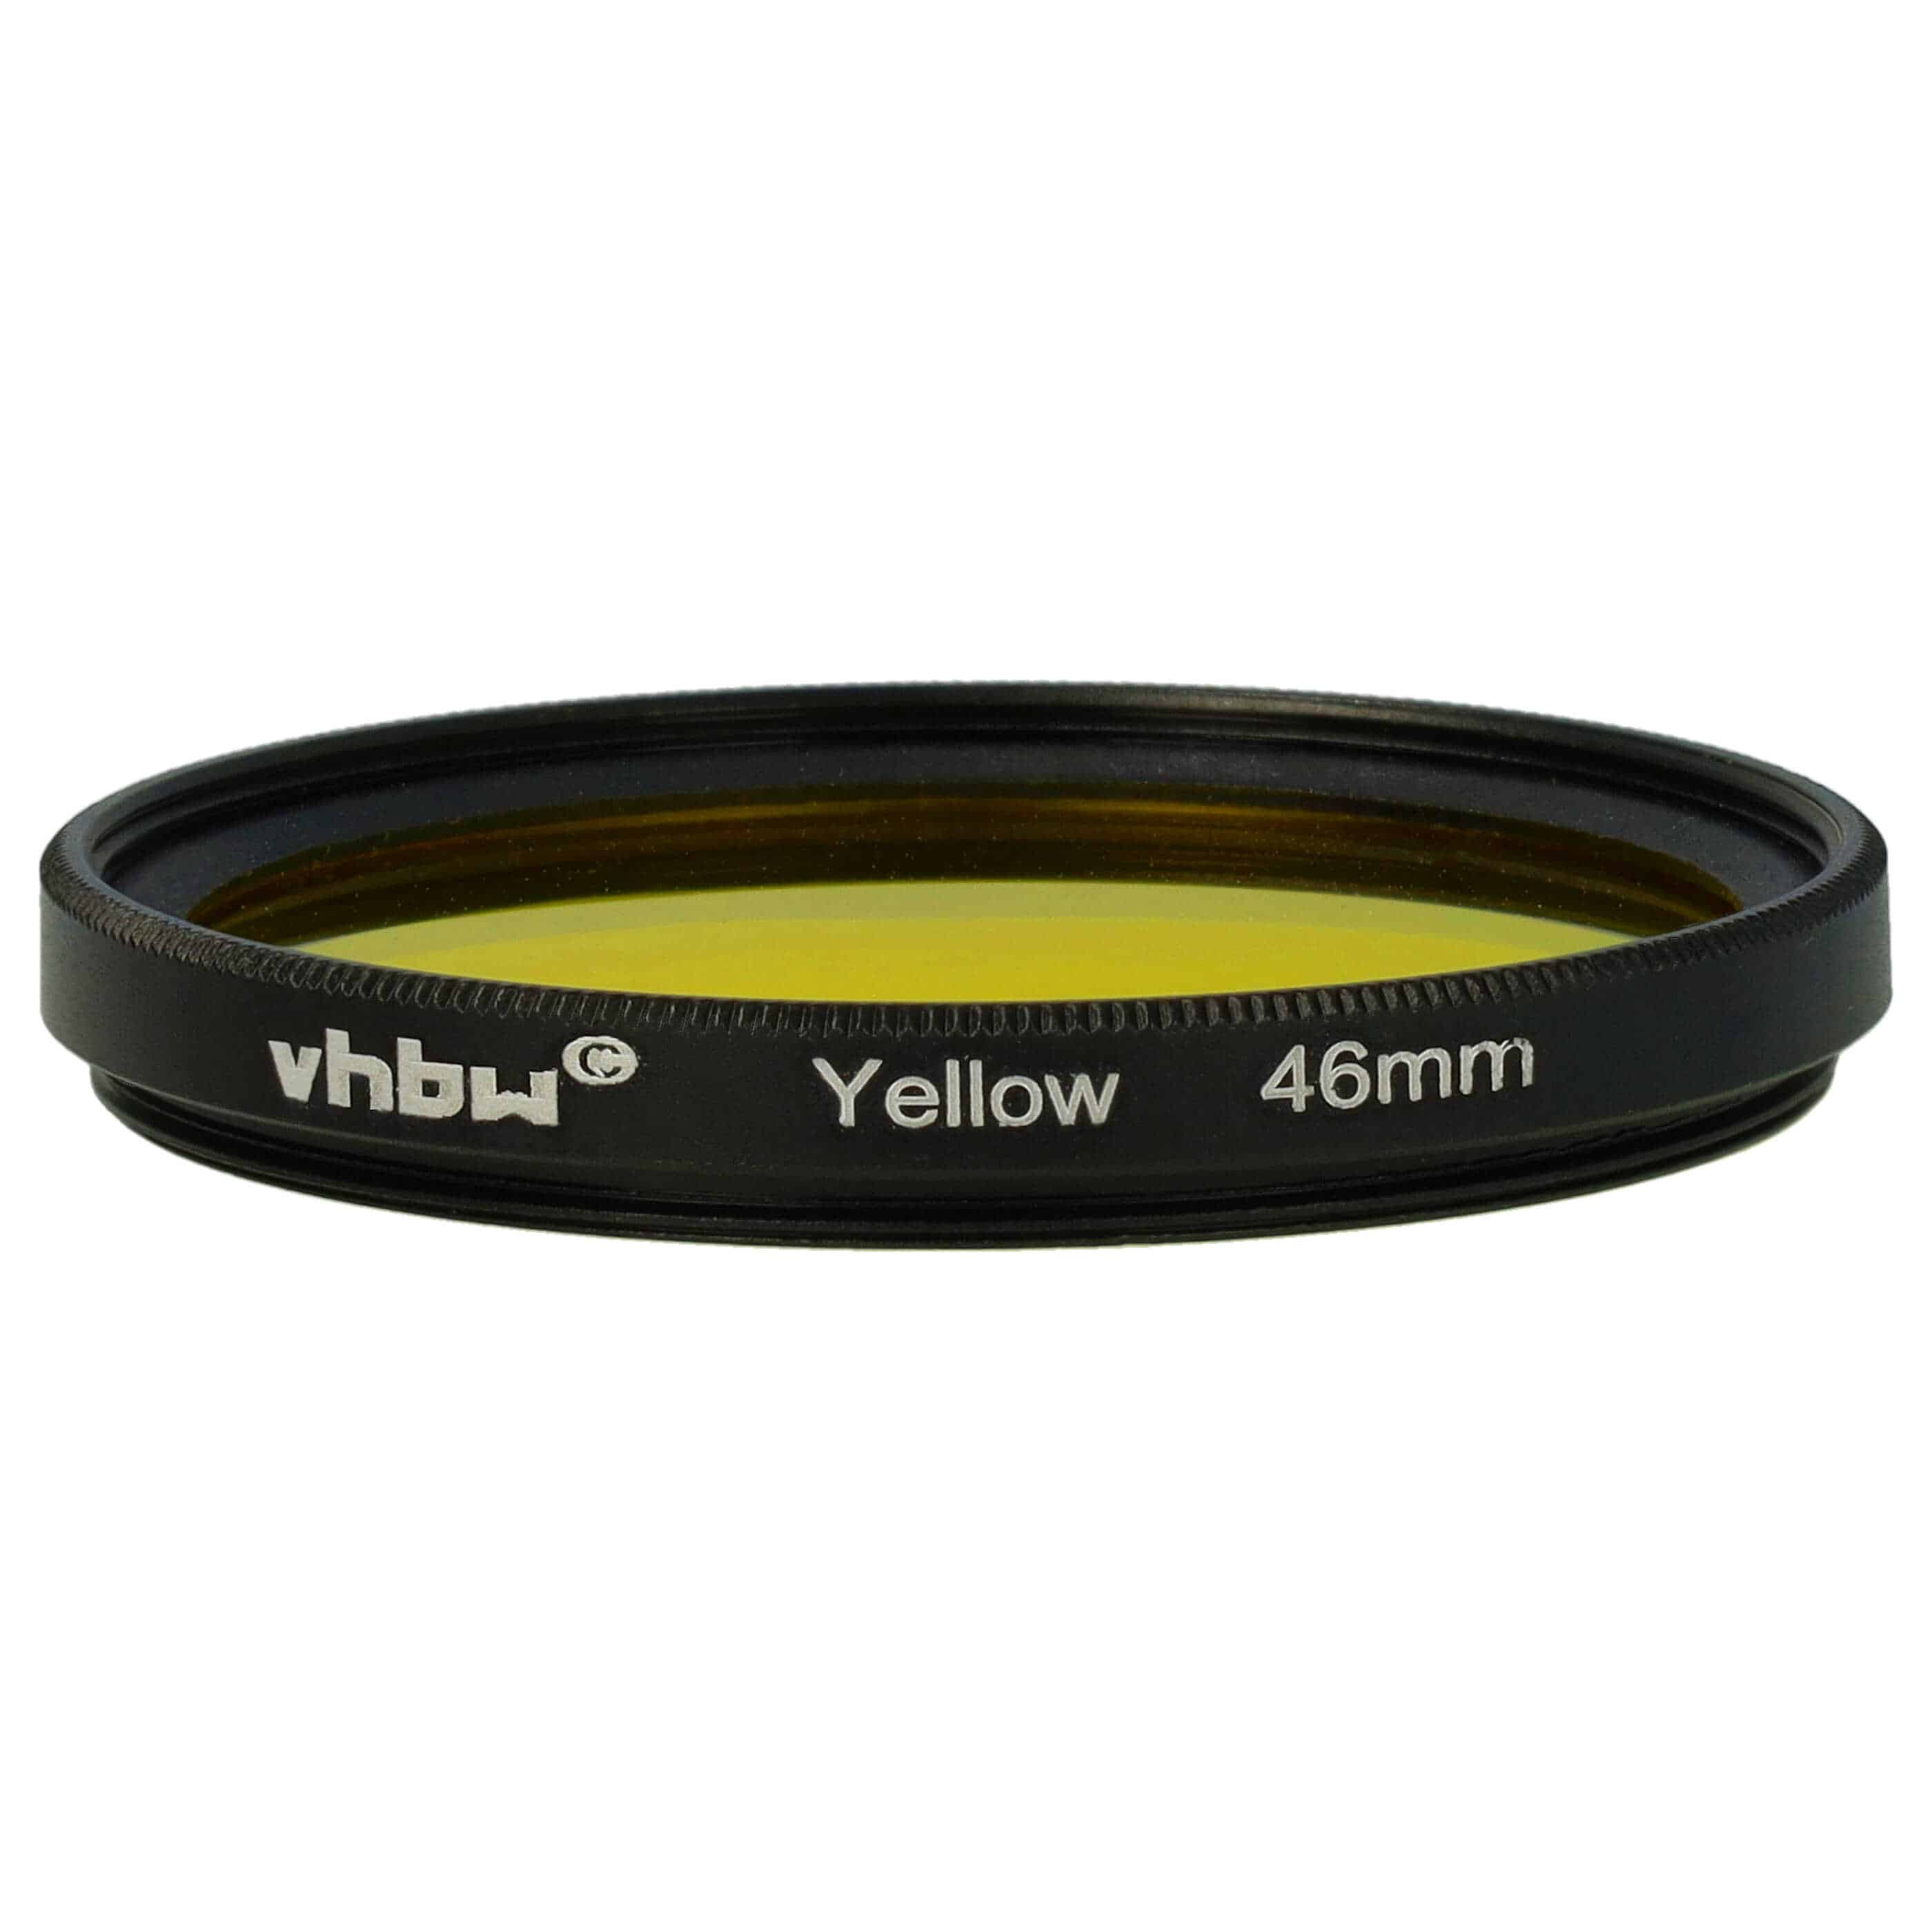 Farbfilter gelb passend für Kamera Objektive mit 46 mm Filtergewinde - Gelbfilter